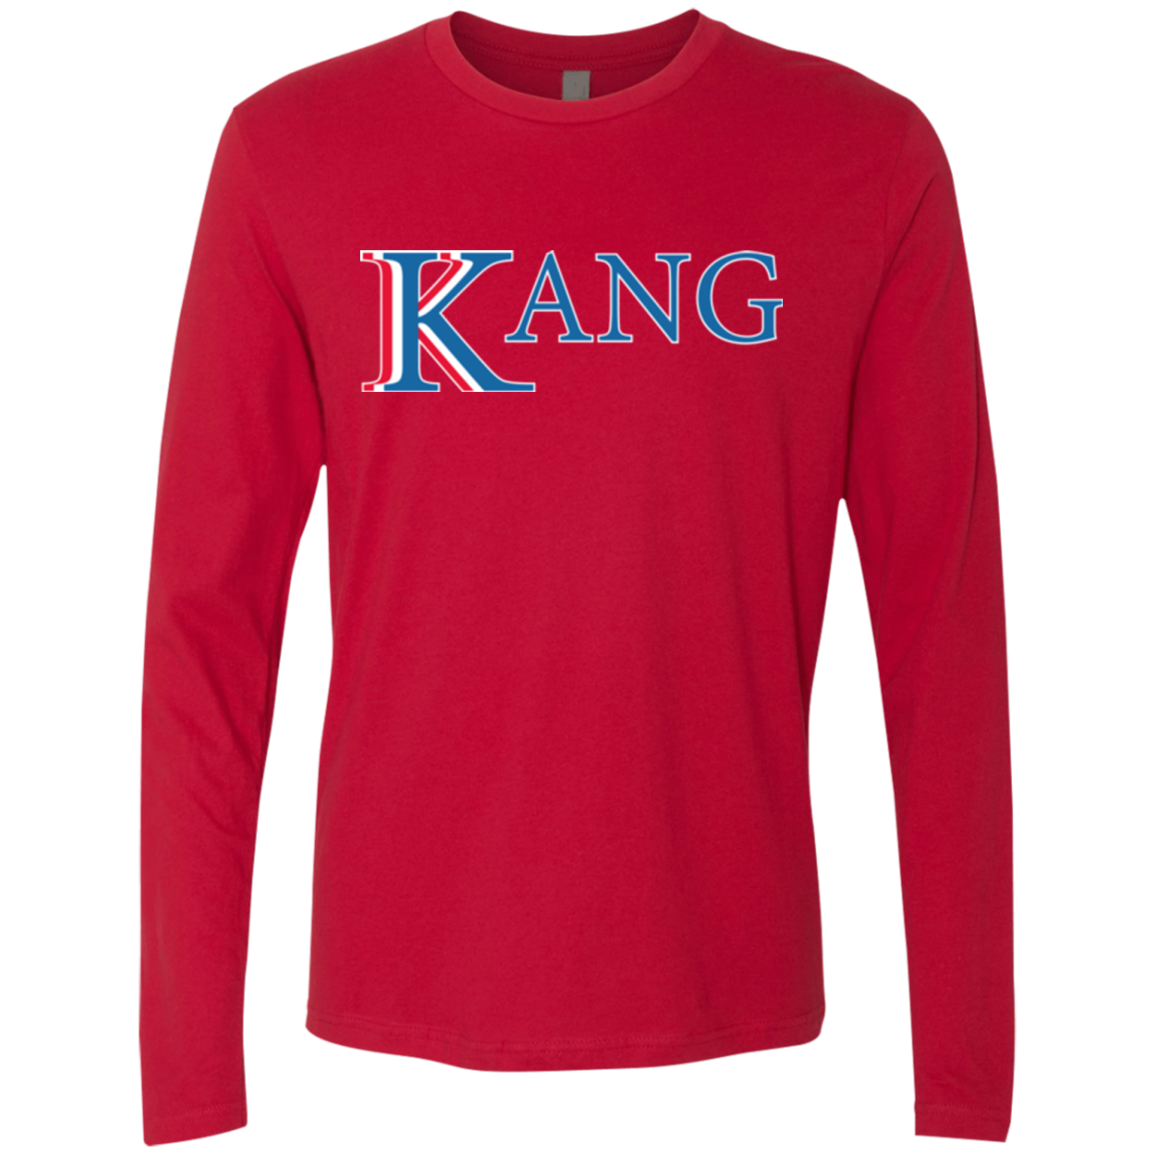 Vote for Kang Men's Premium Long Sleeve